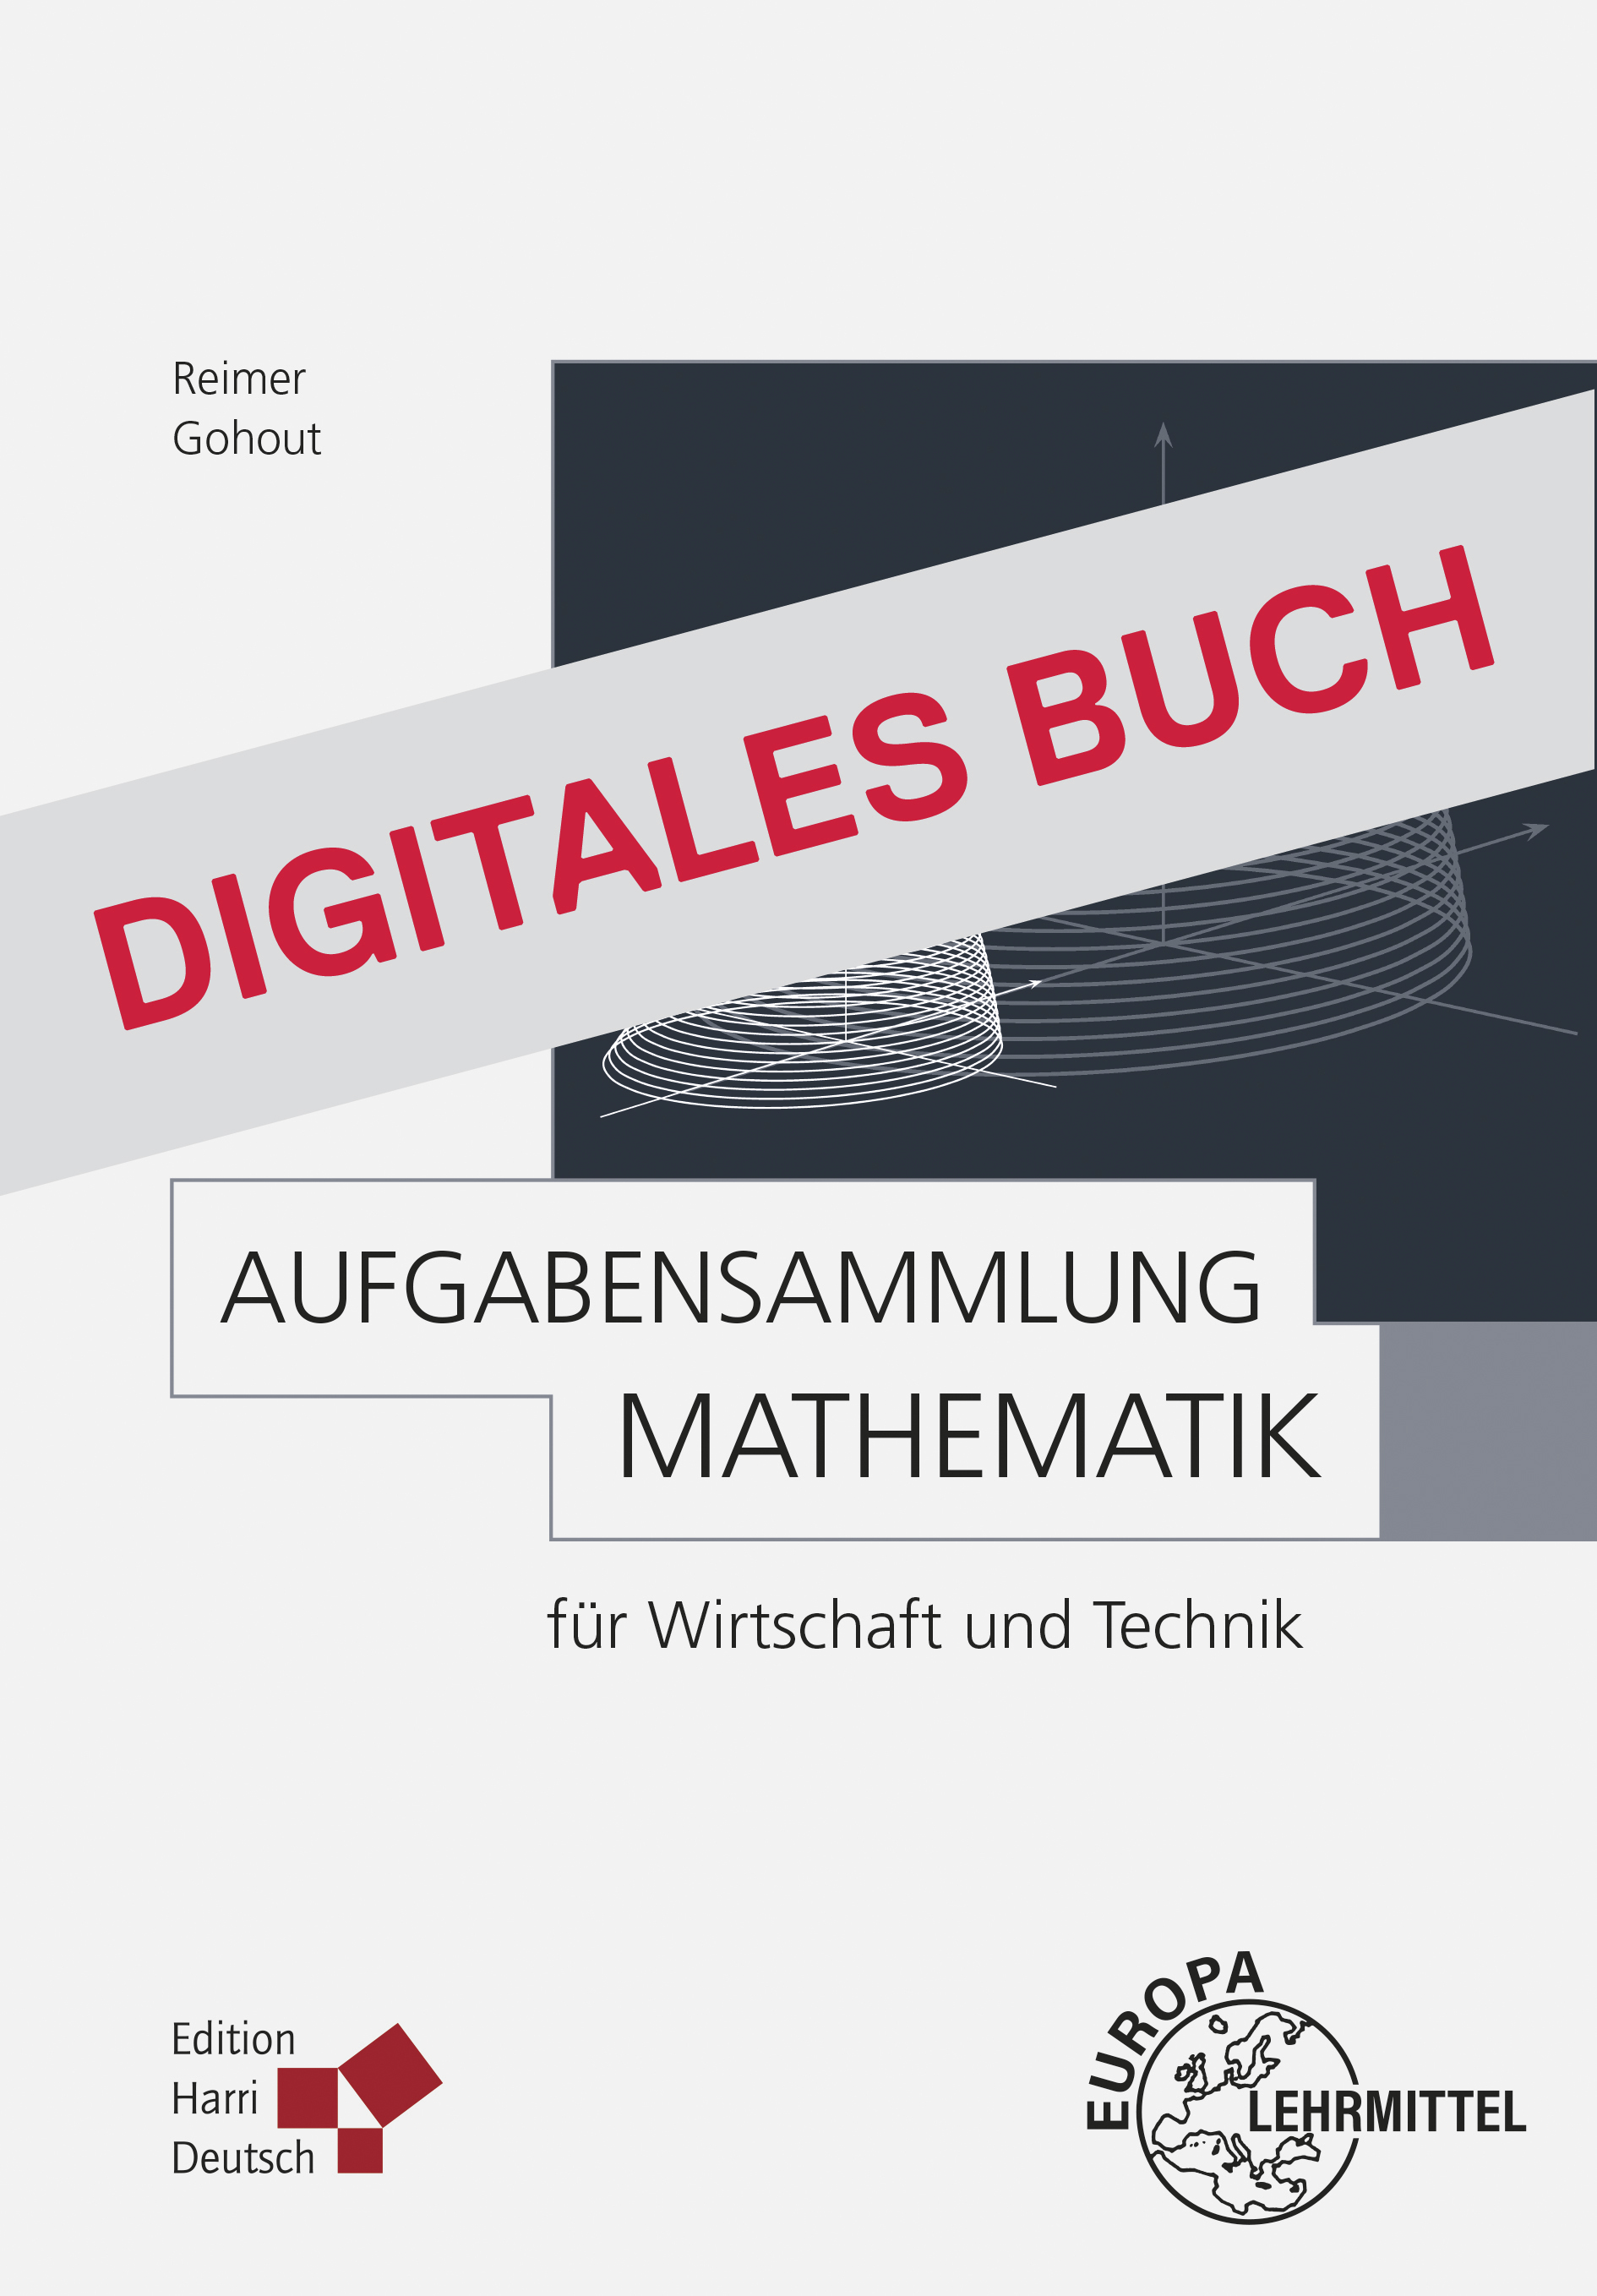 Aufgabensammlung Mathematik für Wirtschaft und Technik - Digitales Buch